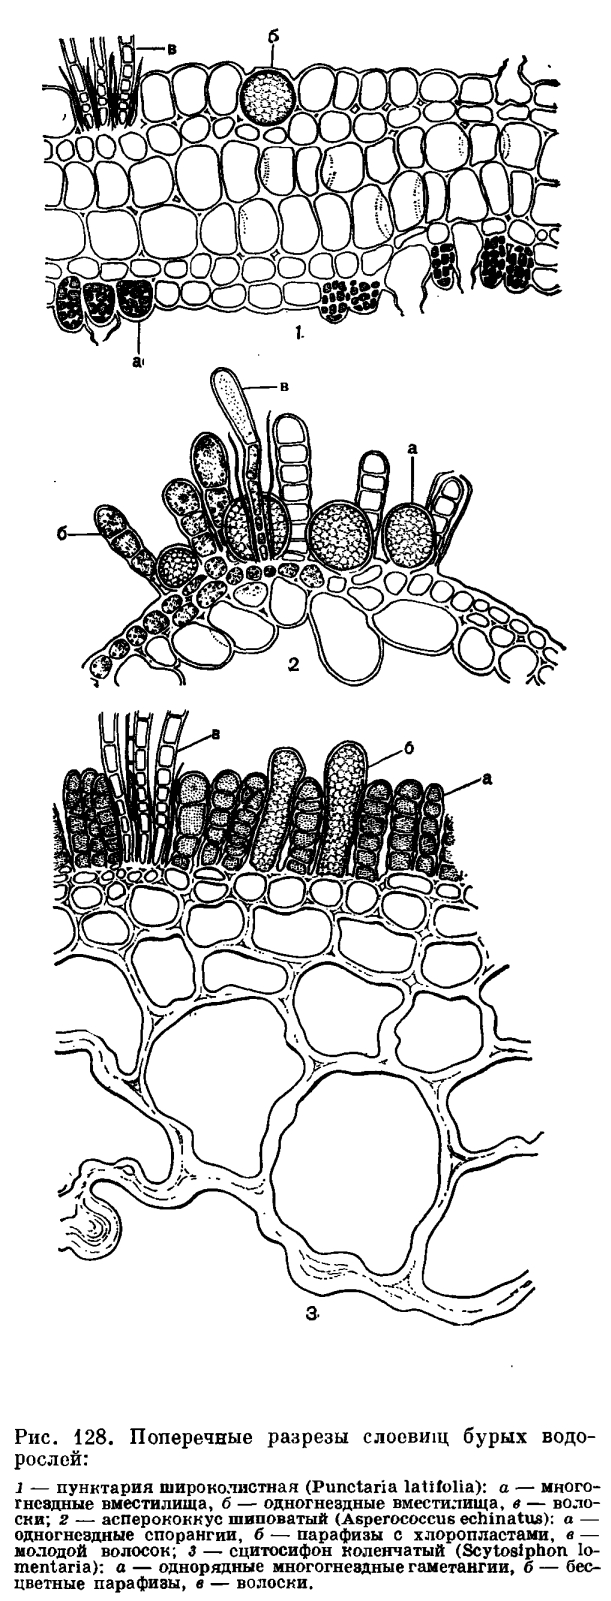 Клетка бурой водоросли. Эктокарпус водоросль. Спорангий бурой водоросли. (Многогнёздными спорангиями). Одногнездный спорангий.